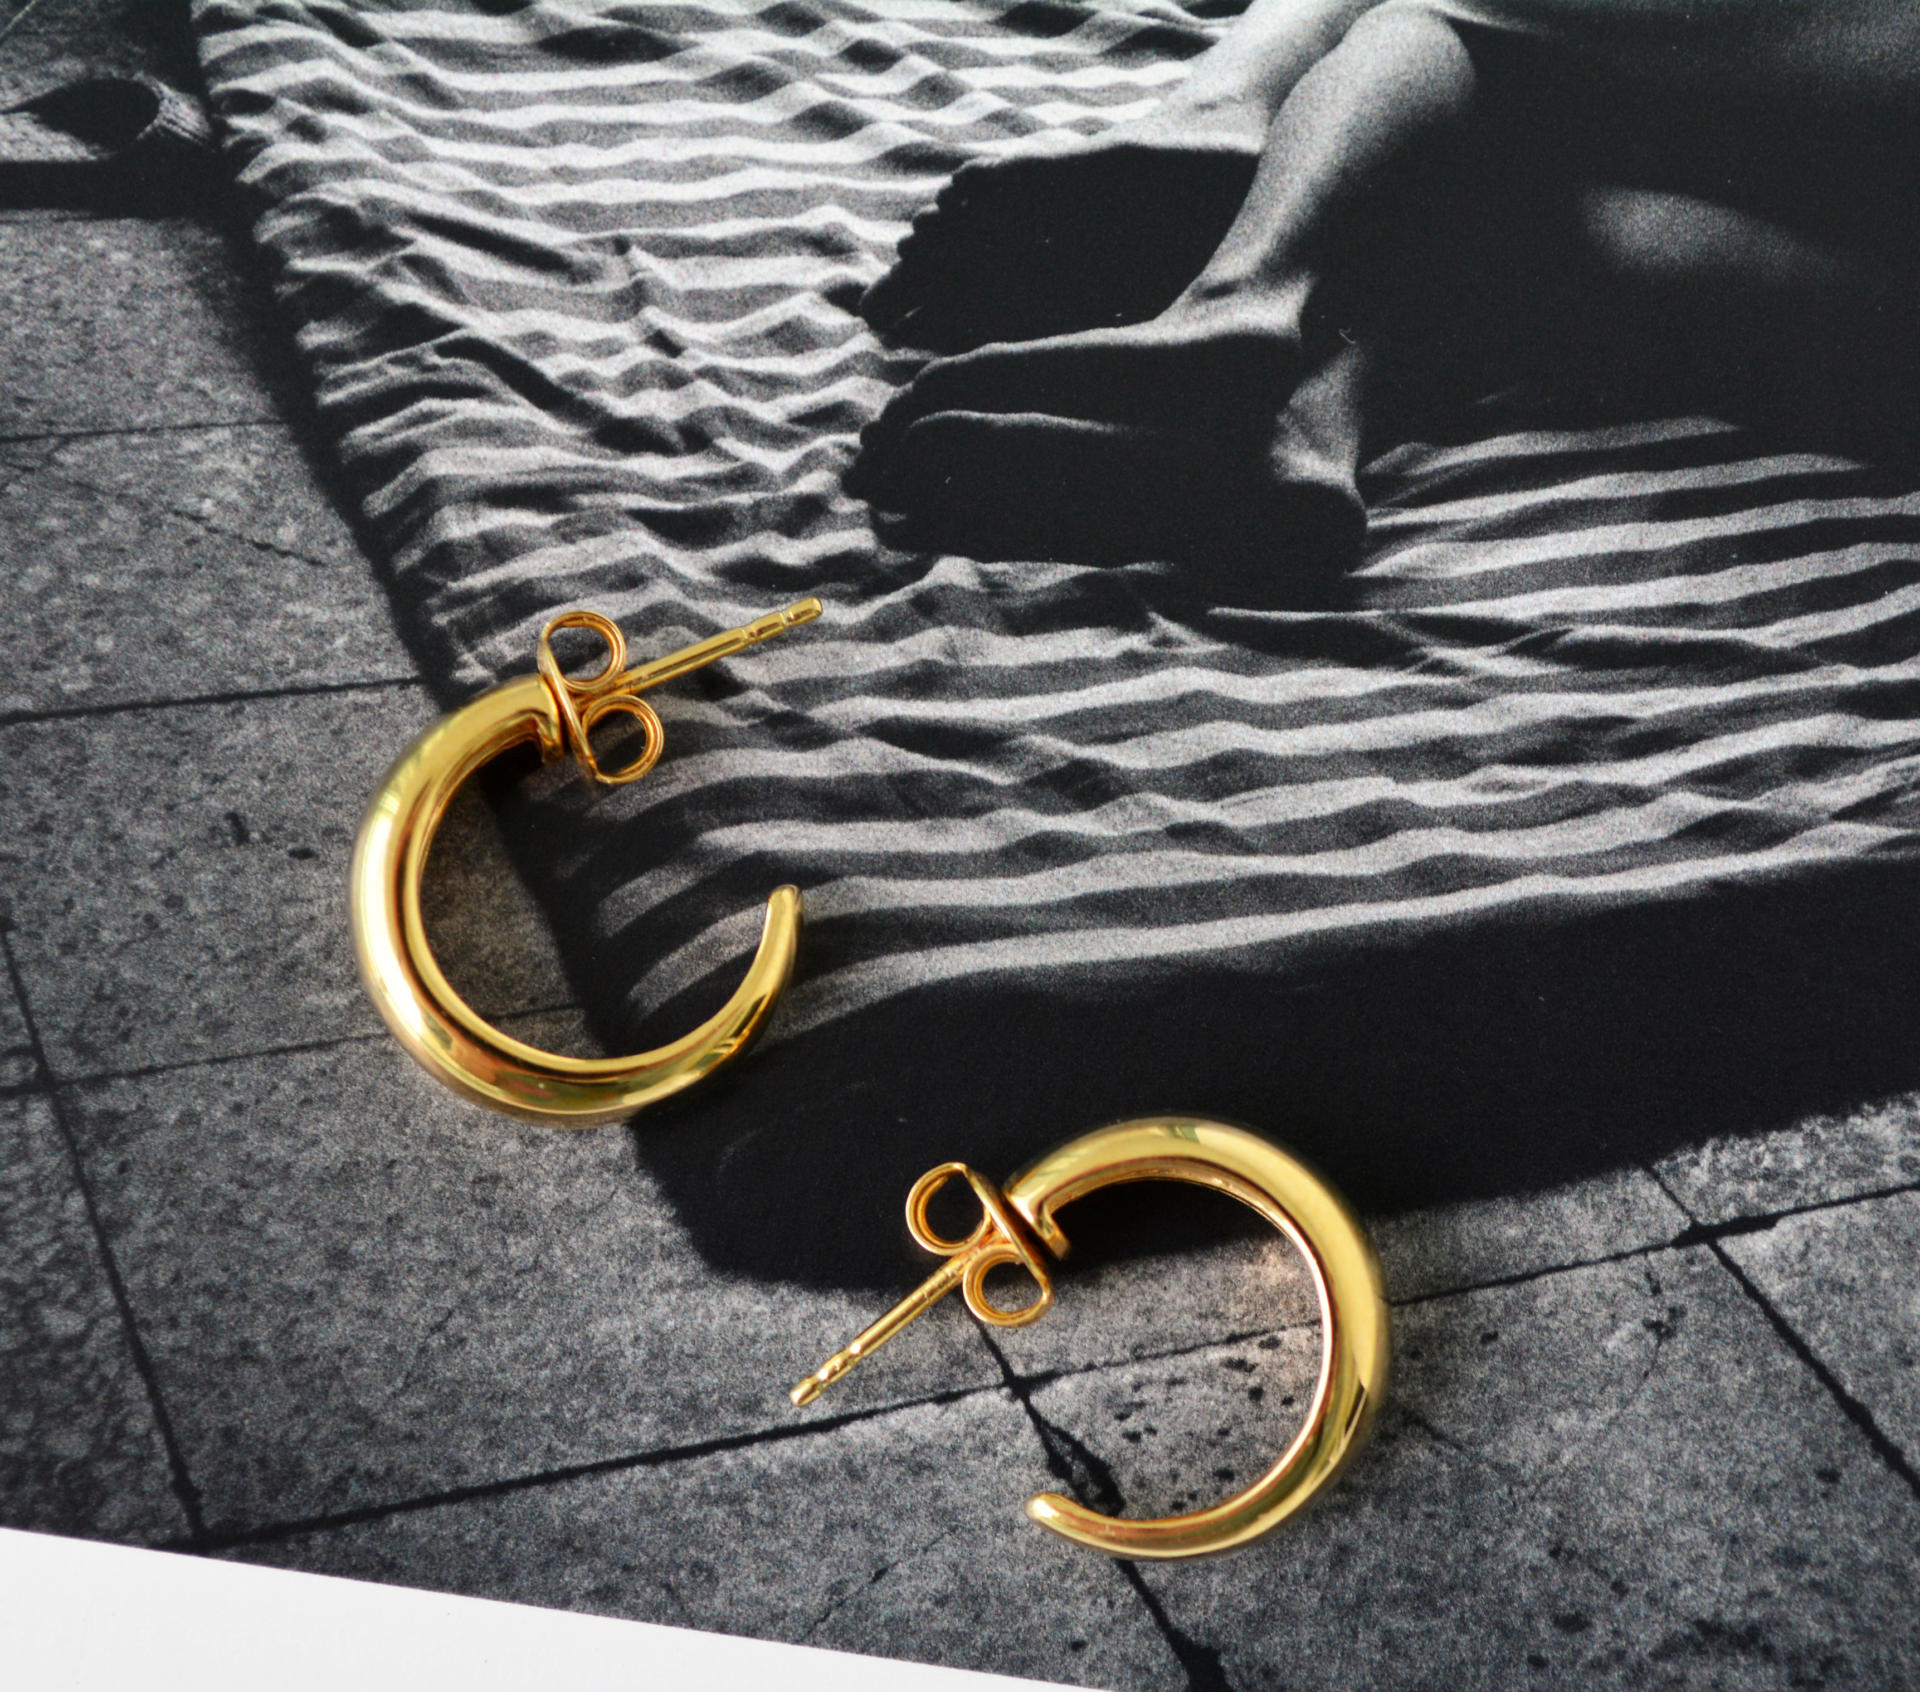 Mejuri Gold Vermeil Hoop Earrings: Chunky Large Hoops